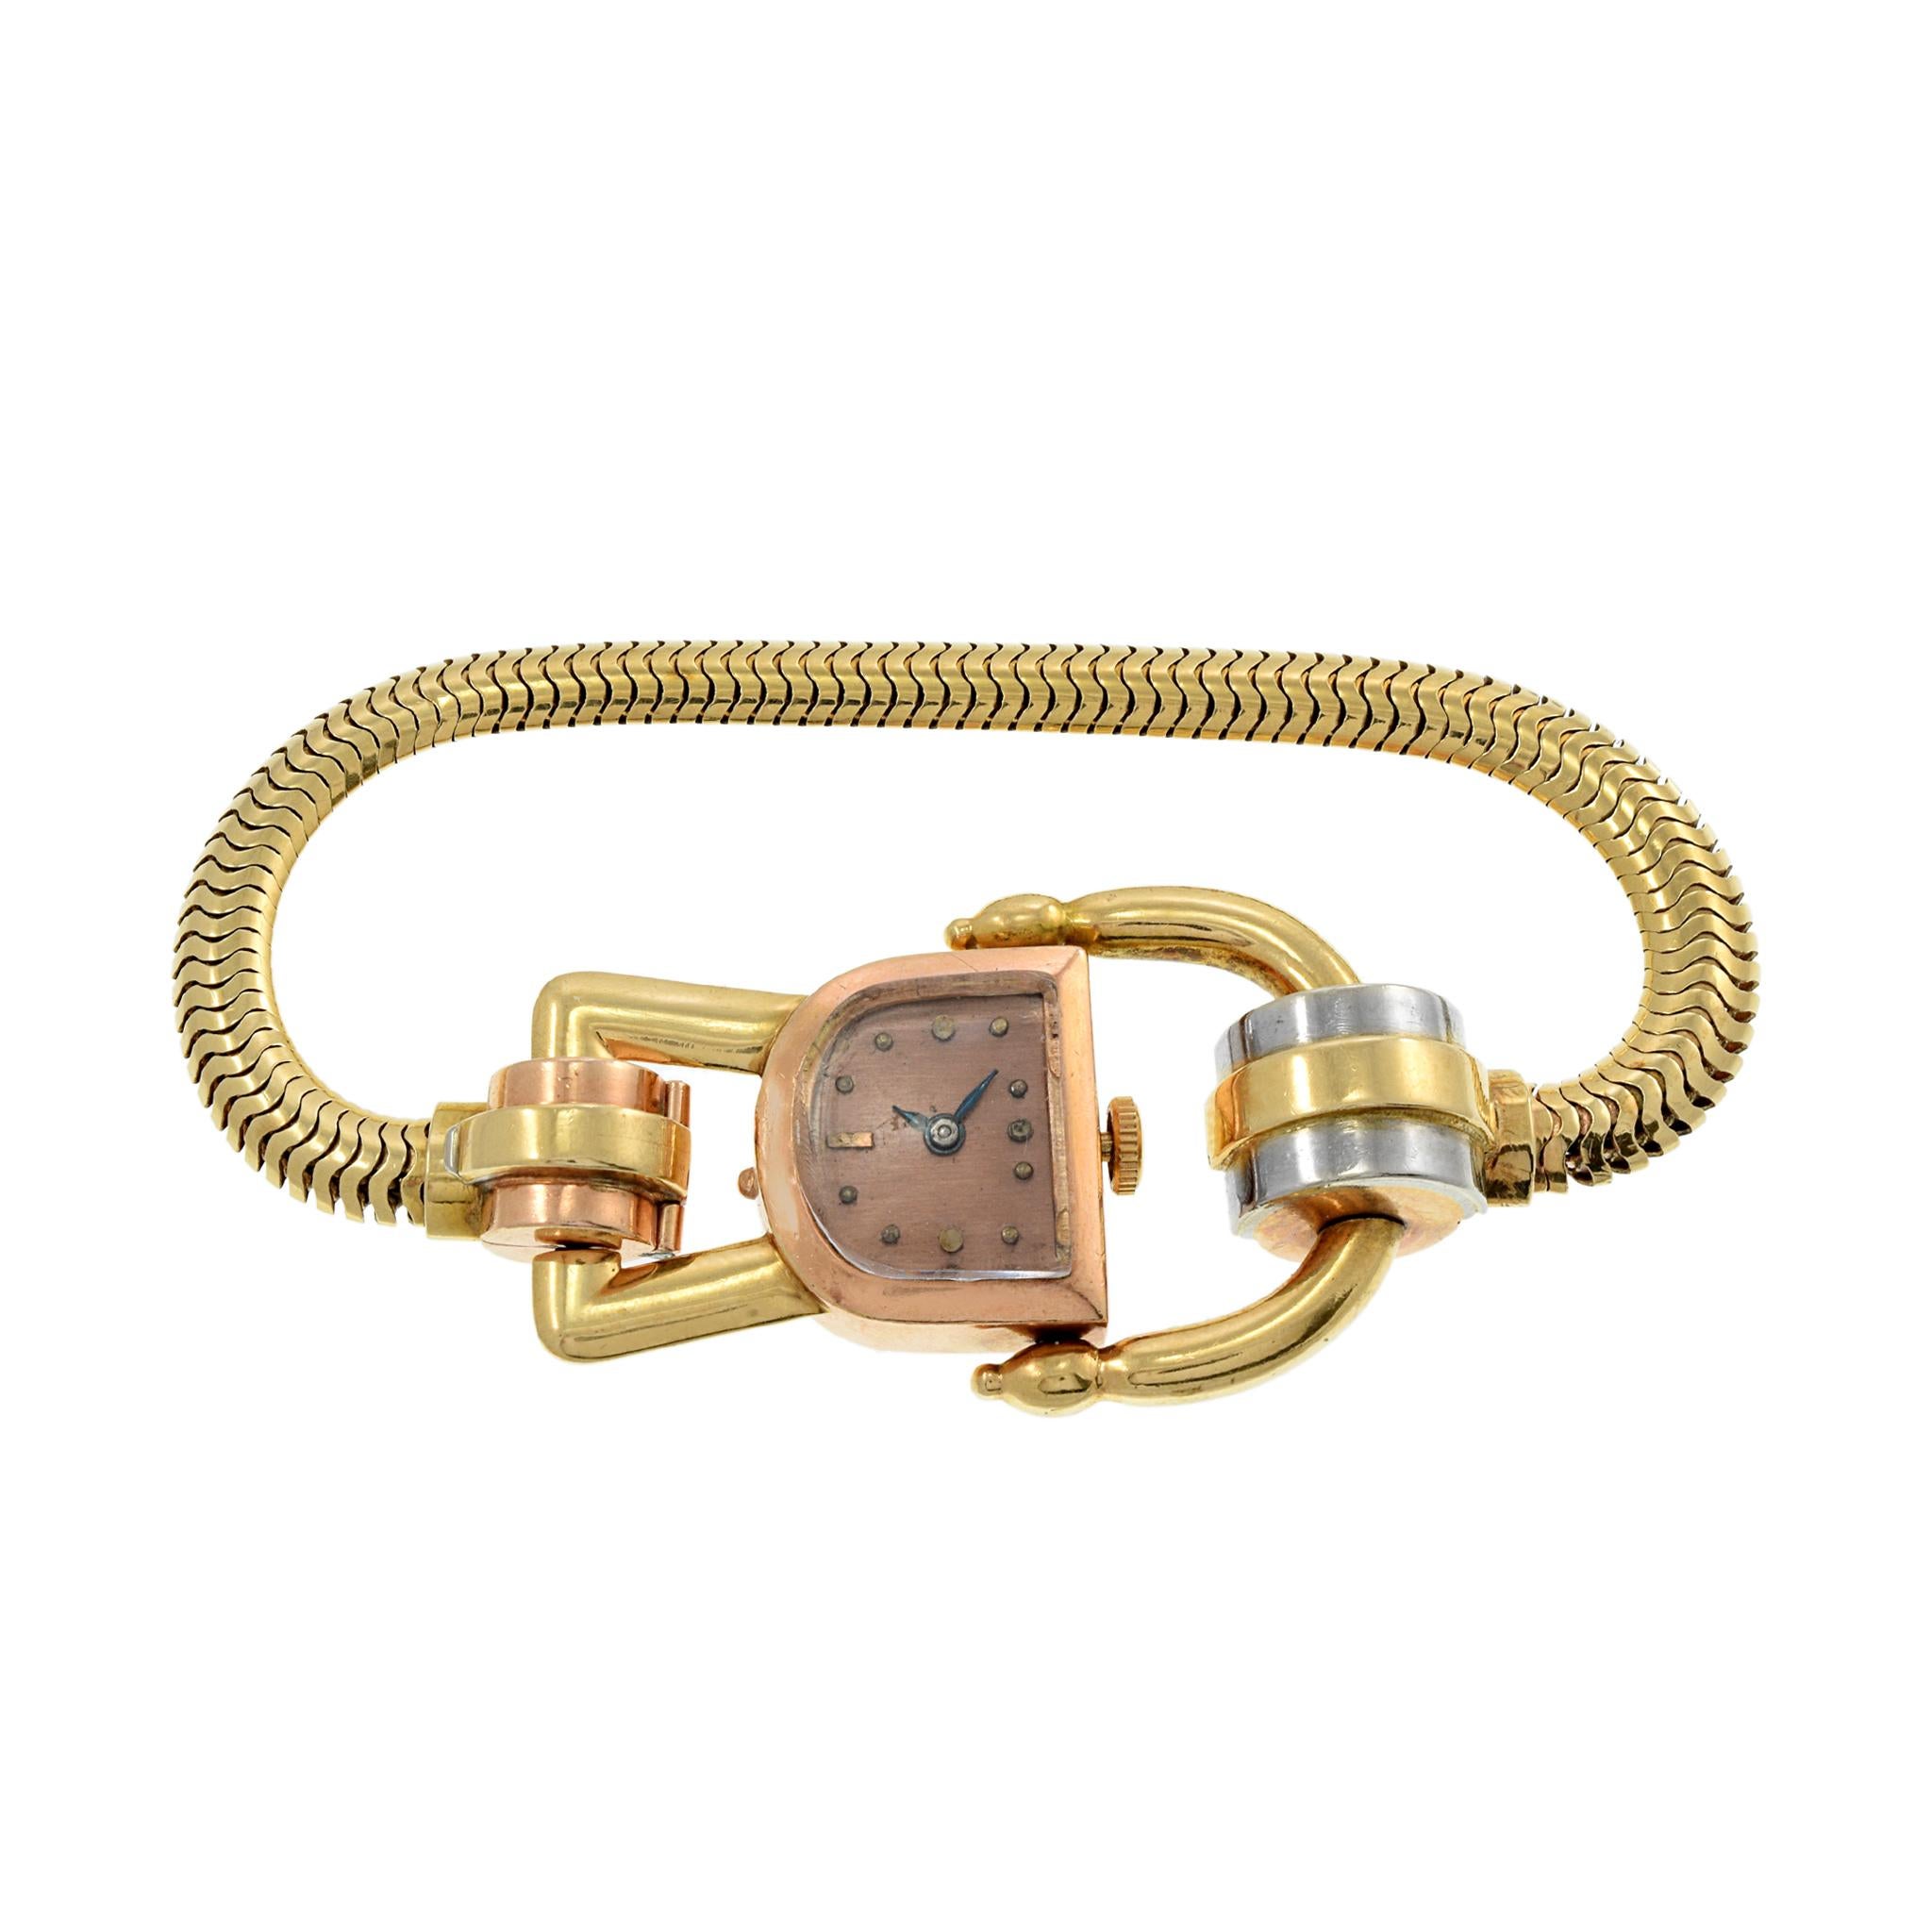 Dies ist eine schöne Jos Boillat tri Farbe 18K Gold Cocktail Uhr. Diese Uhr misst 17 mm x 11 mm und trägt sich aufgrund des verschnörkelten Gehäuses und des Armbandes größer. Die Uhr wird von einem 17-steinigen Handaufzugswerk angetrieben. Die Uhr